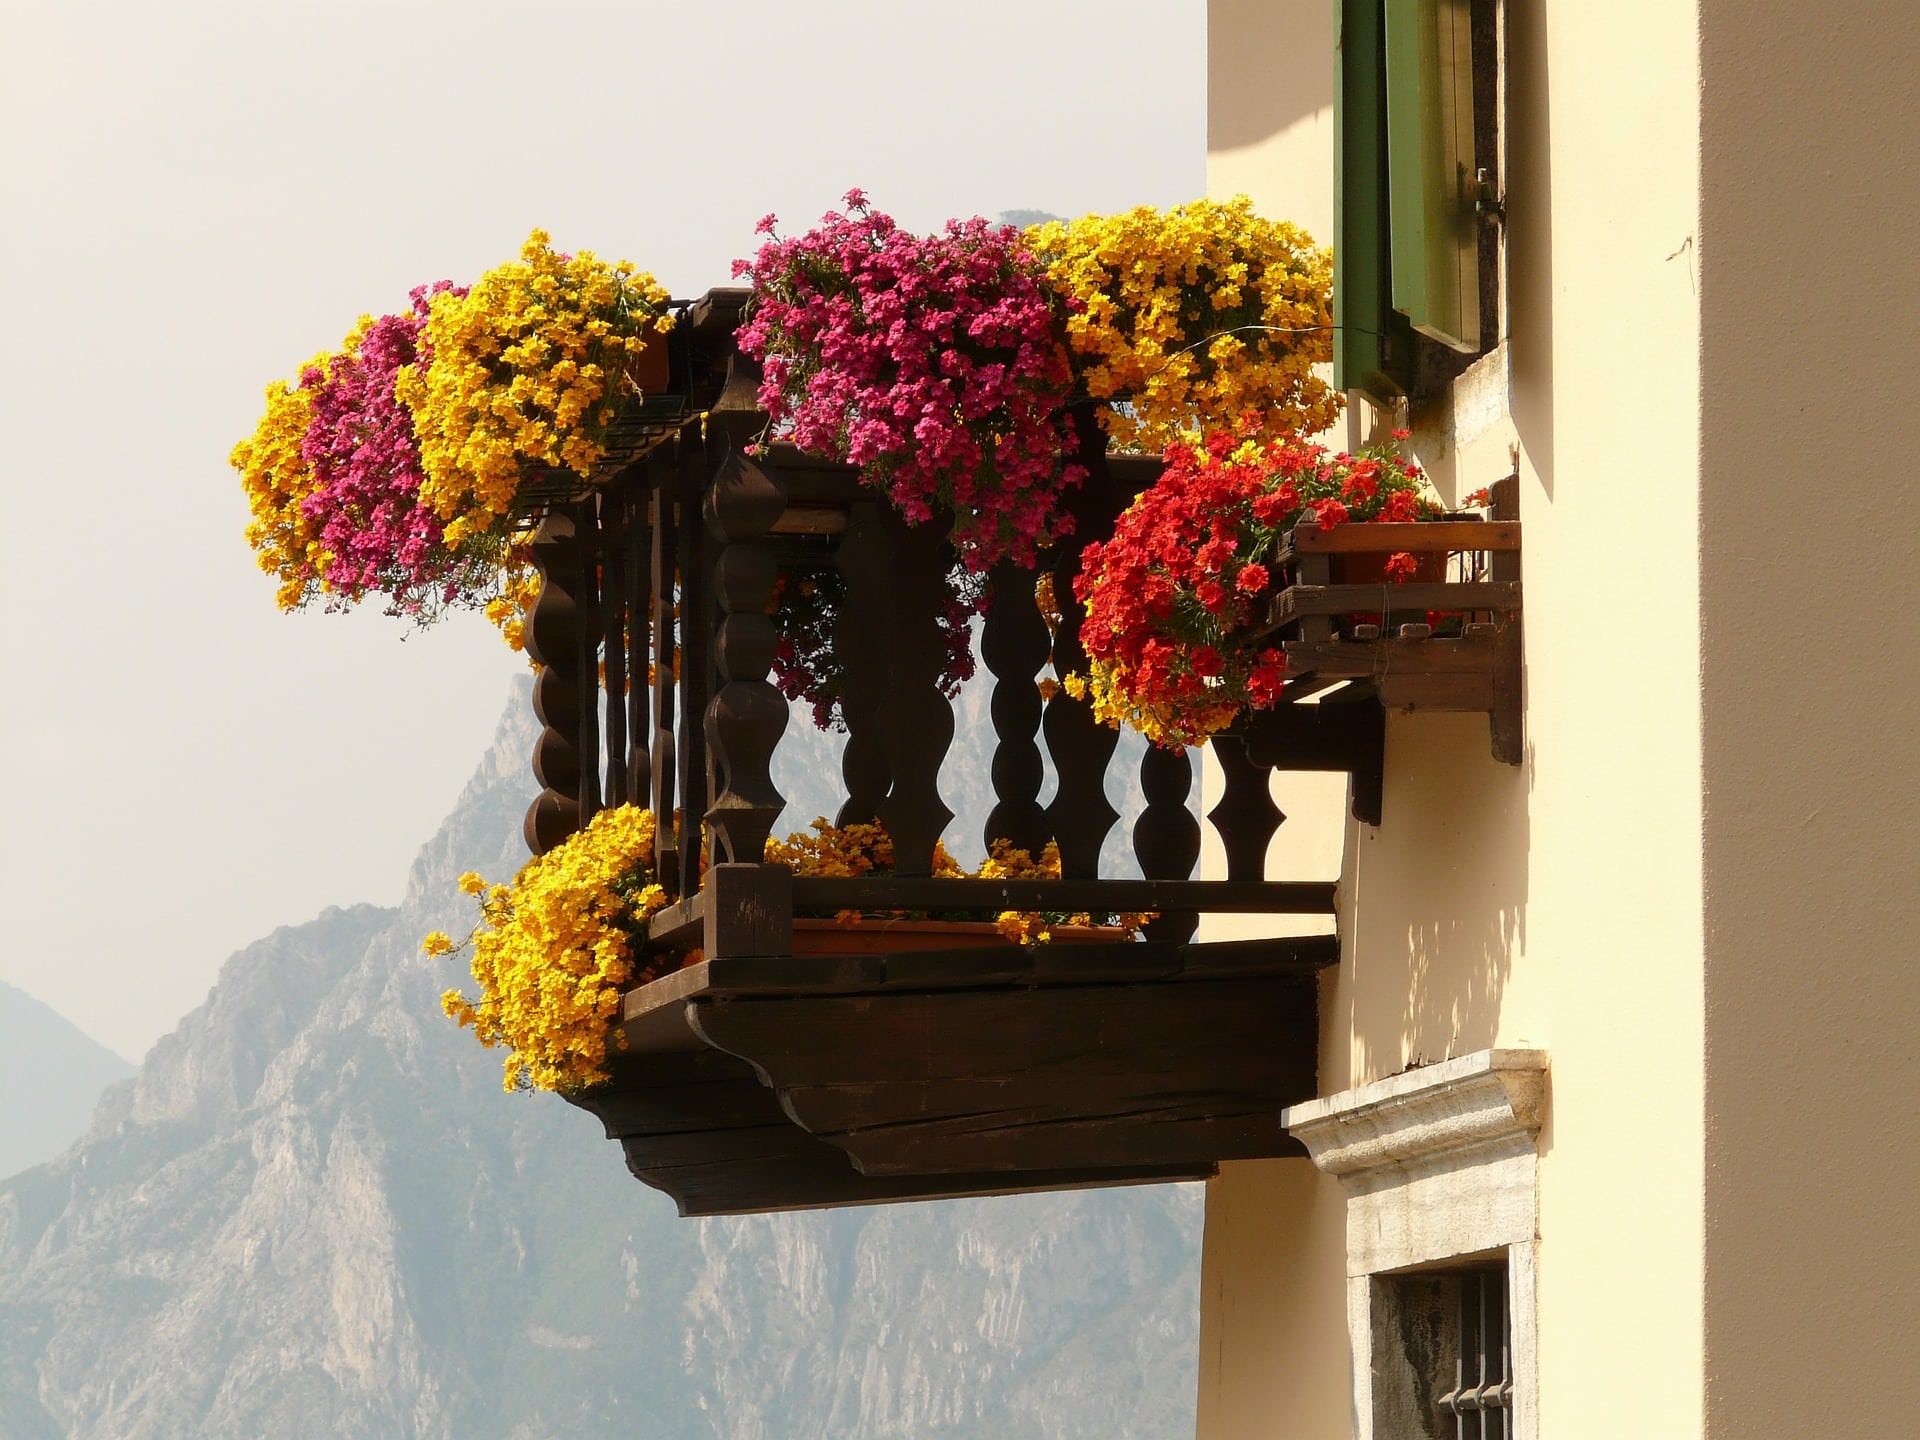 Holt euch den Sommerurlaub auf den Balkon!